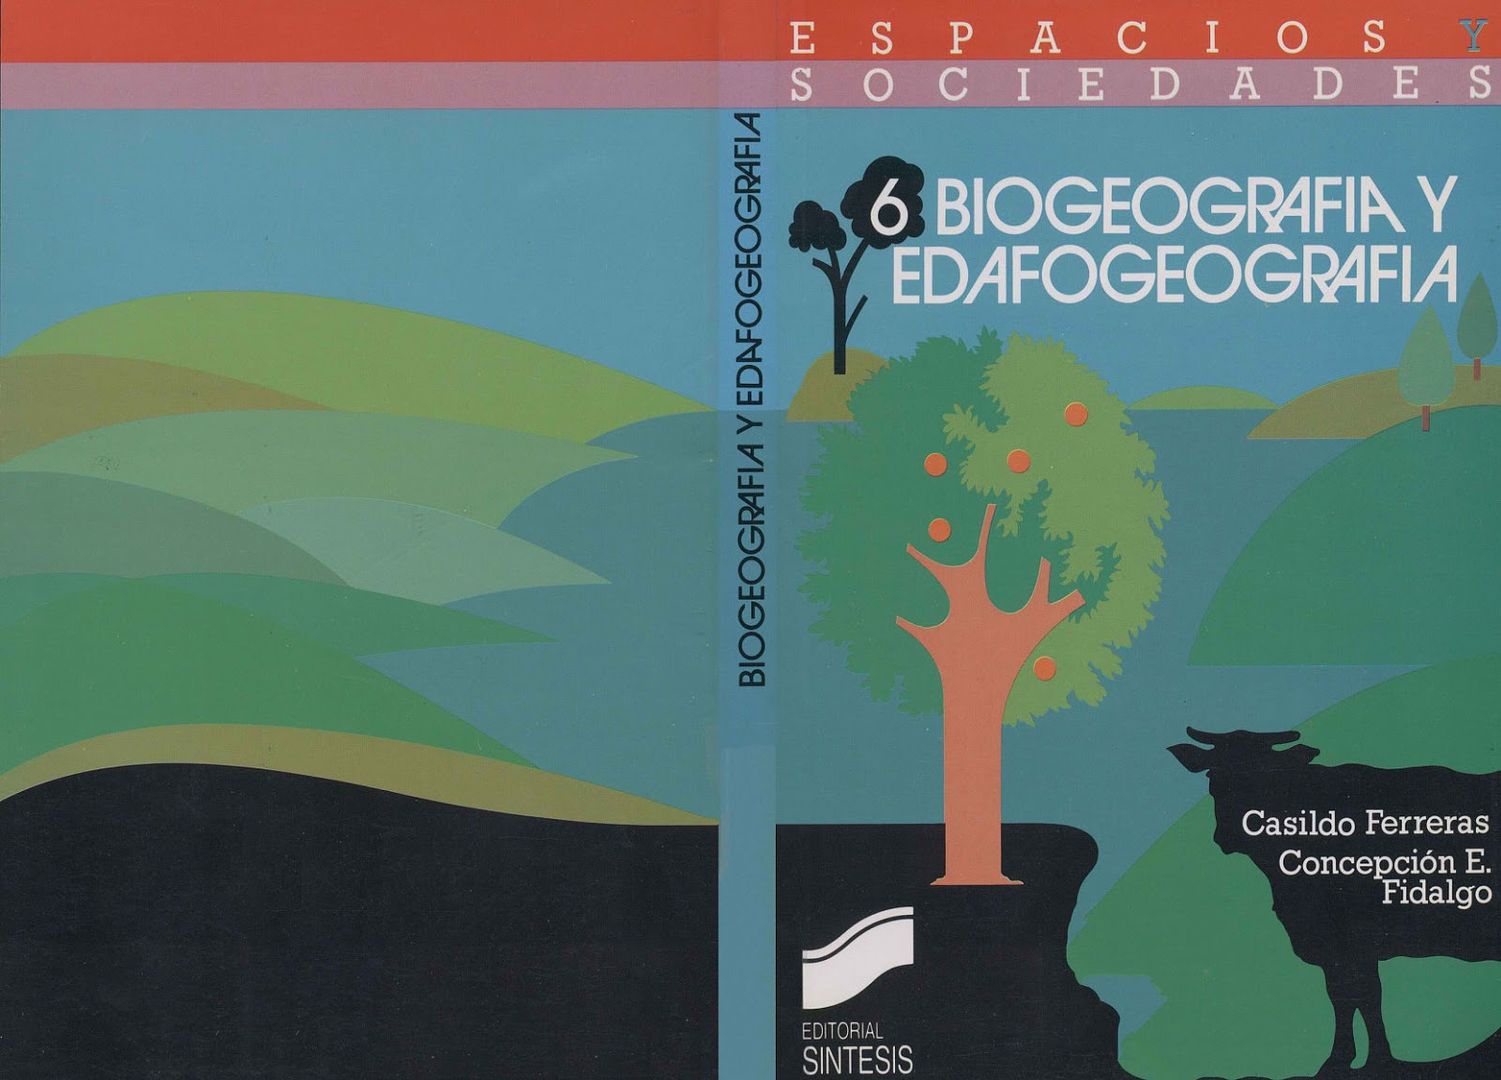 Plantas BiogeografiayEdafogeografia - Biogeografia y Edafogeografia